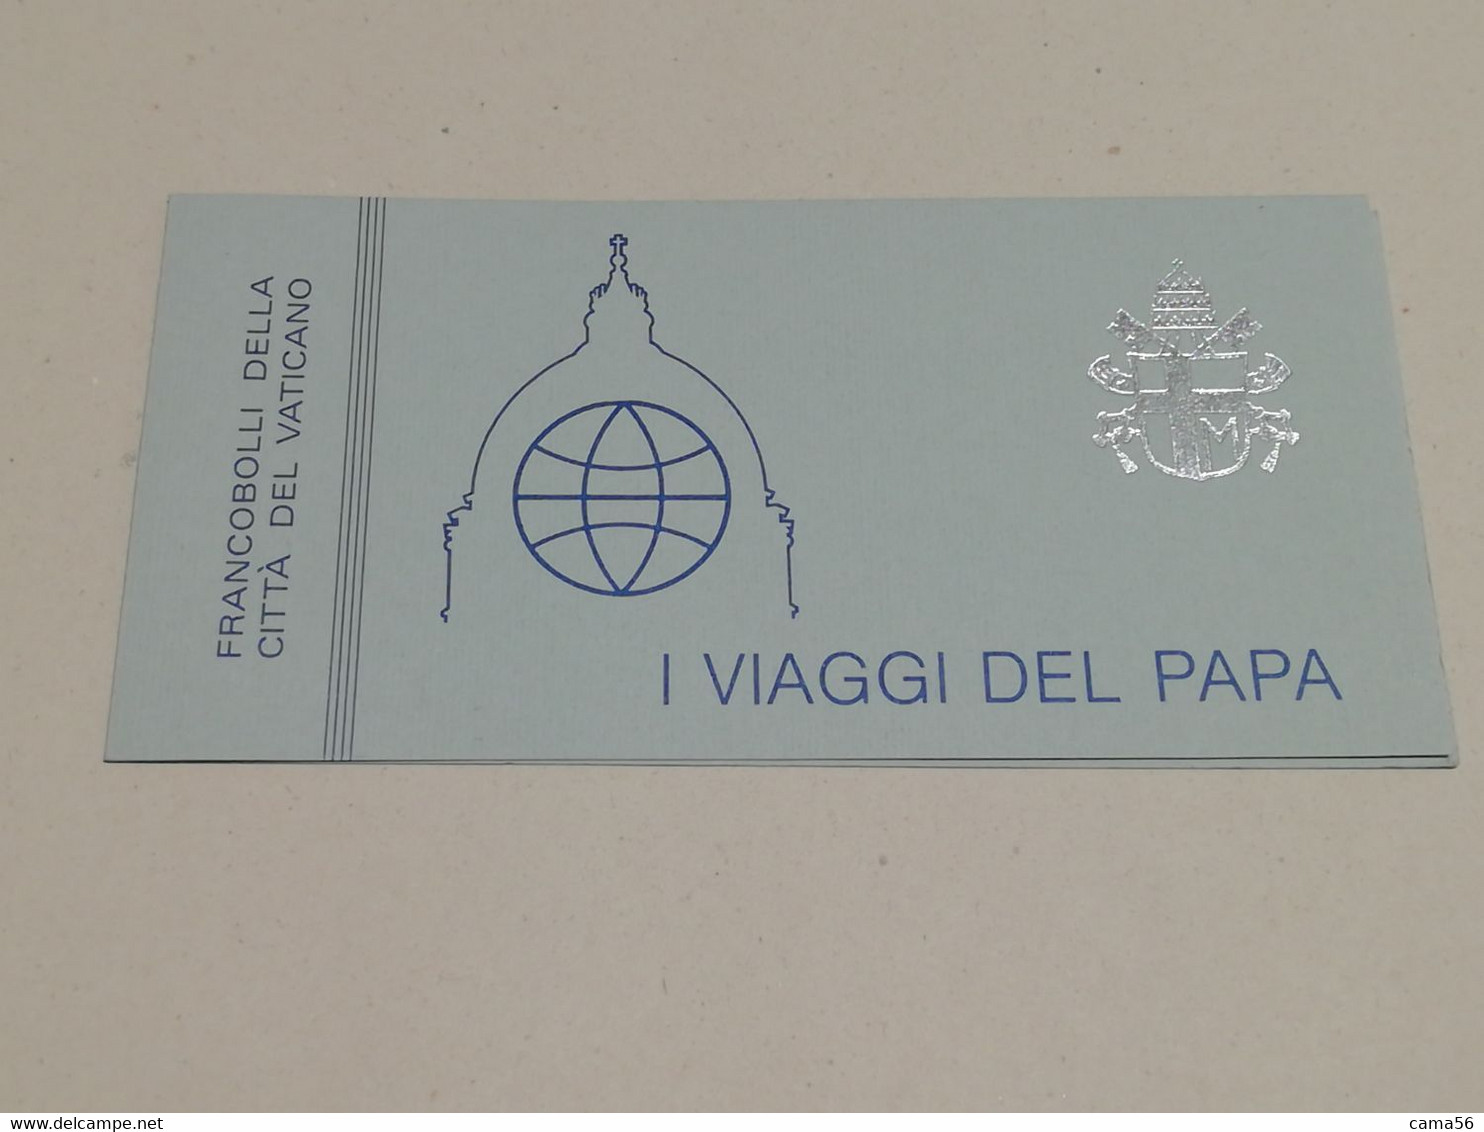 Vaticano 1985 Libretto I Viaggi Di Giovanni Paolo II. - Booklets